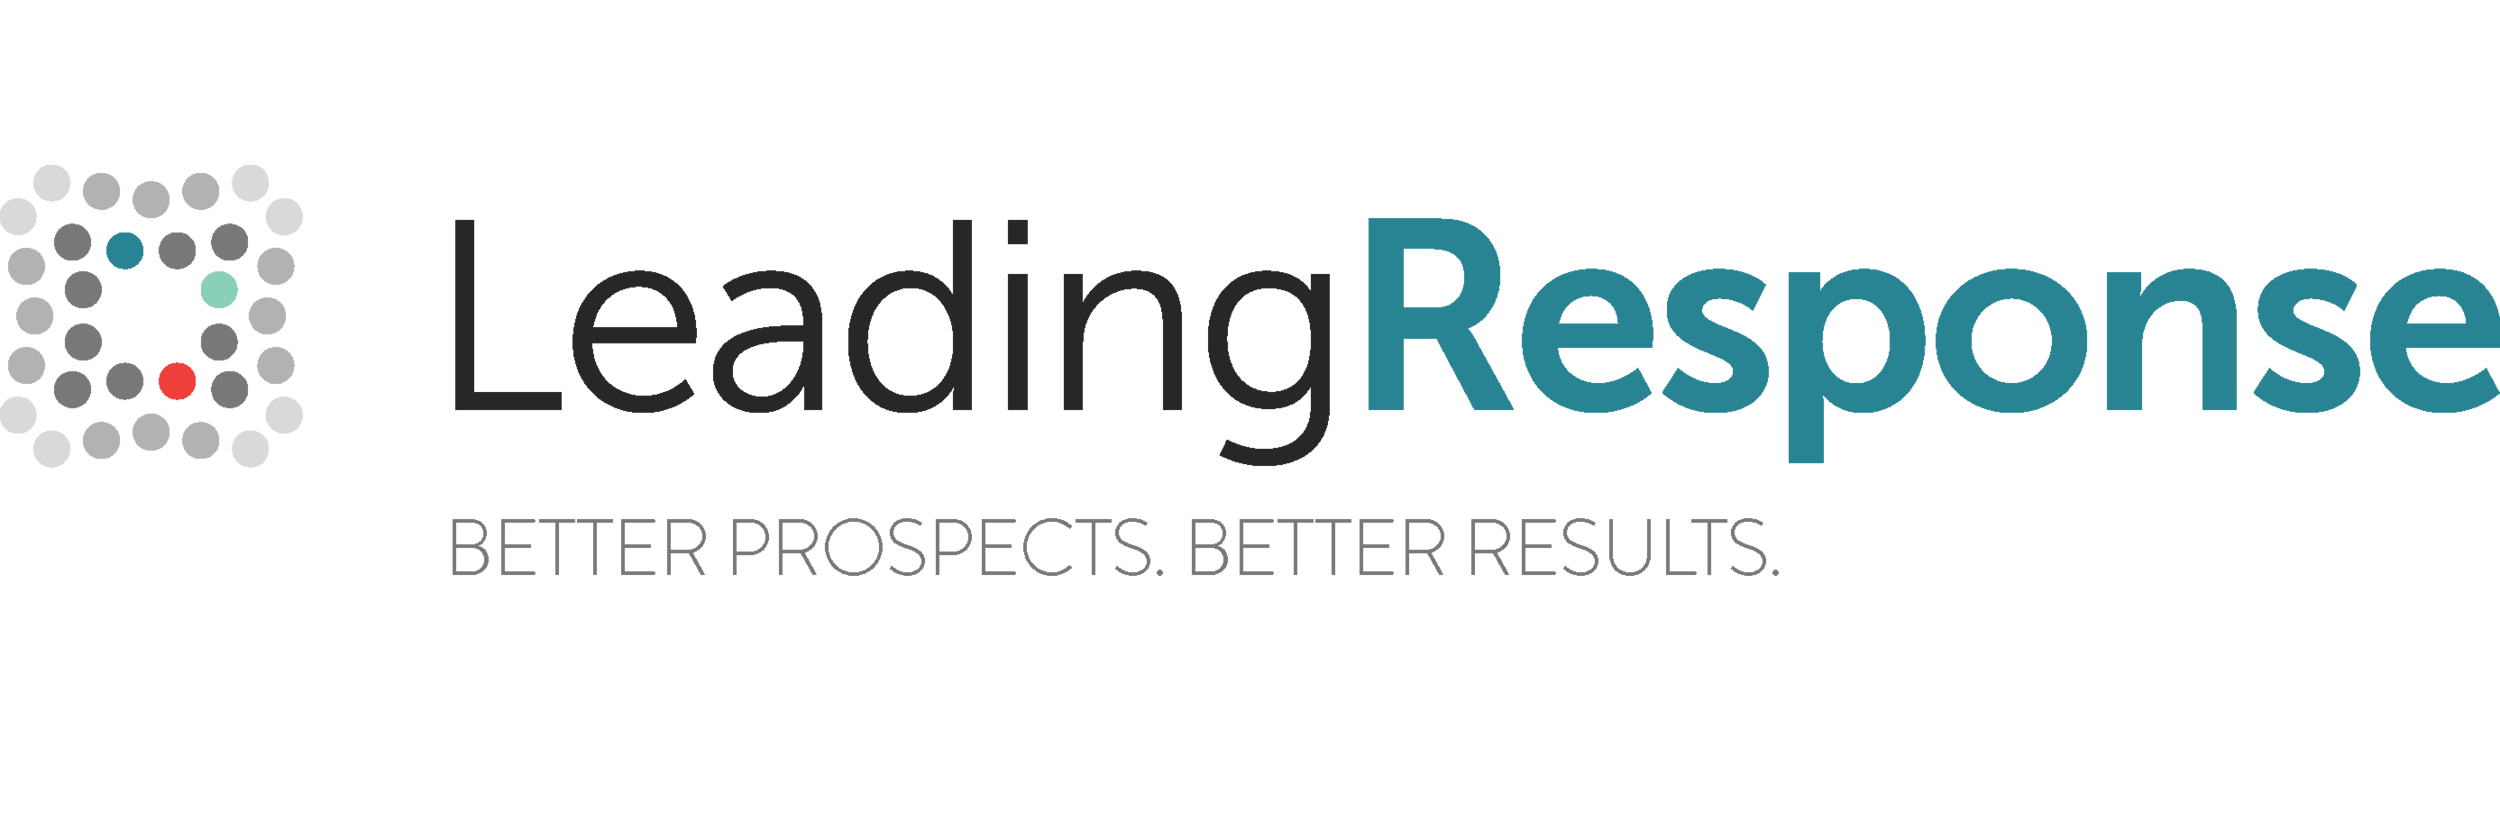 Leading-Response-Logo.png